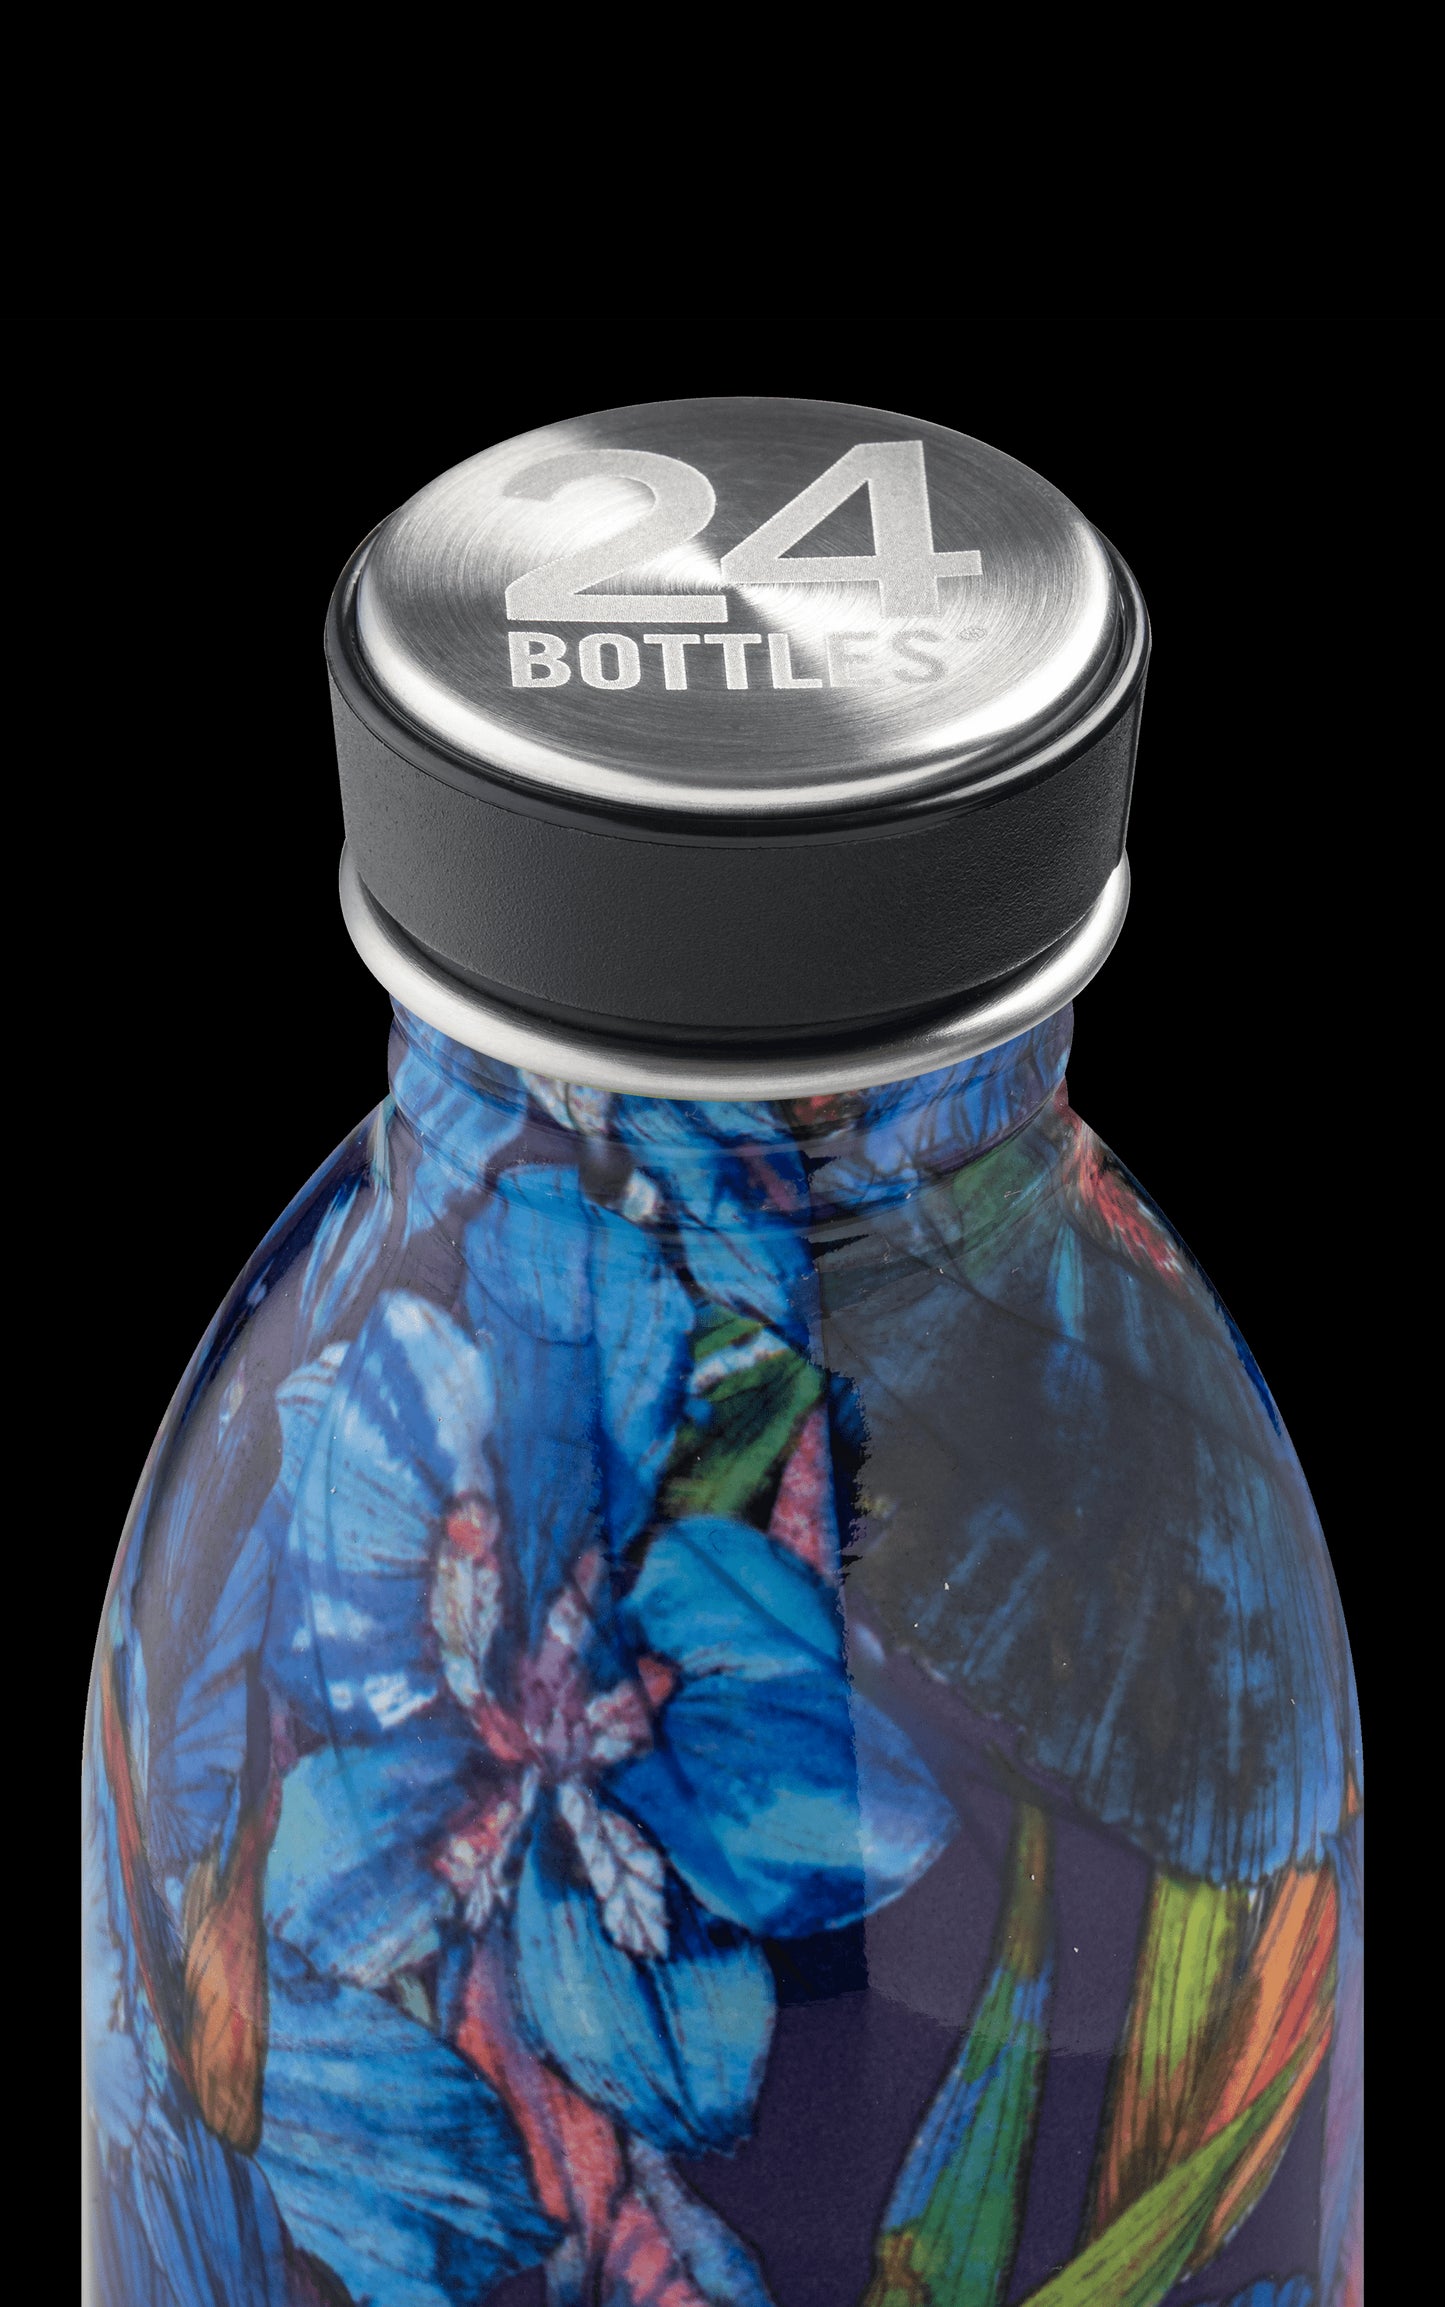 Edelstahl Trinkflasche Iris 0,5 l